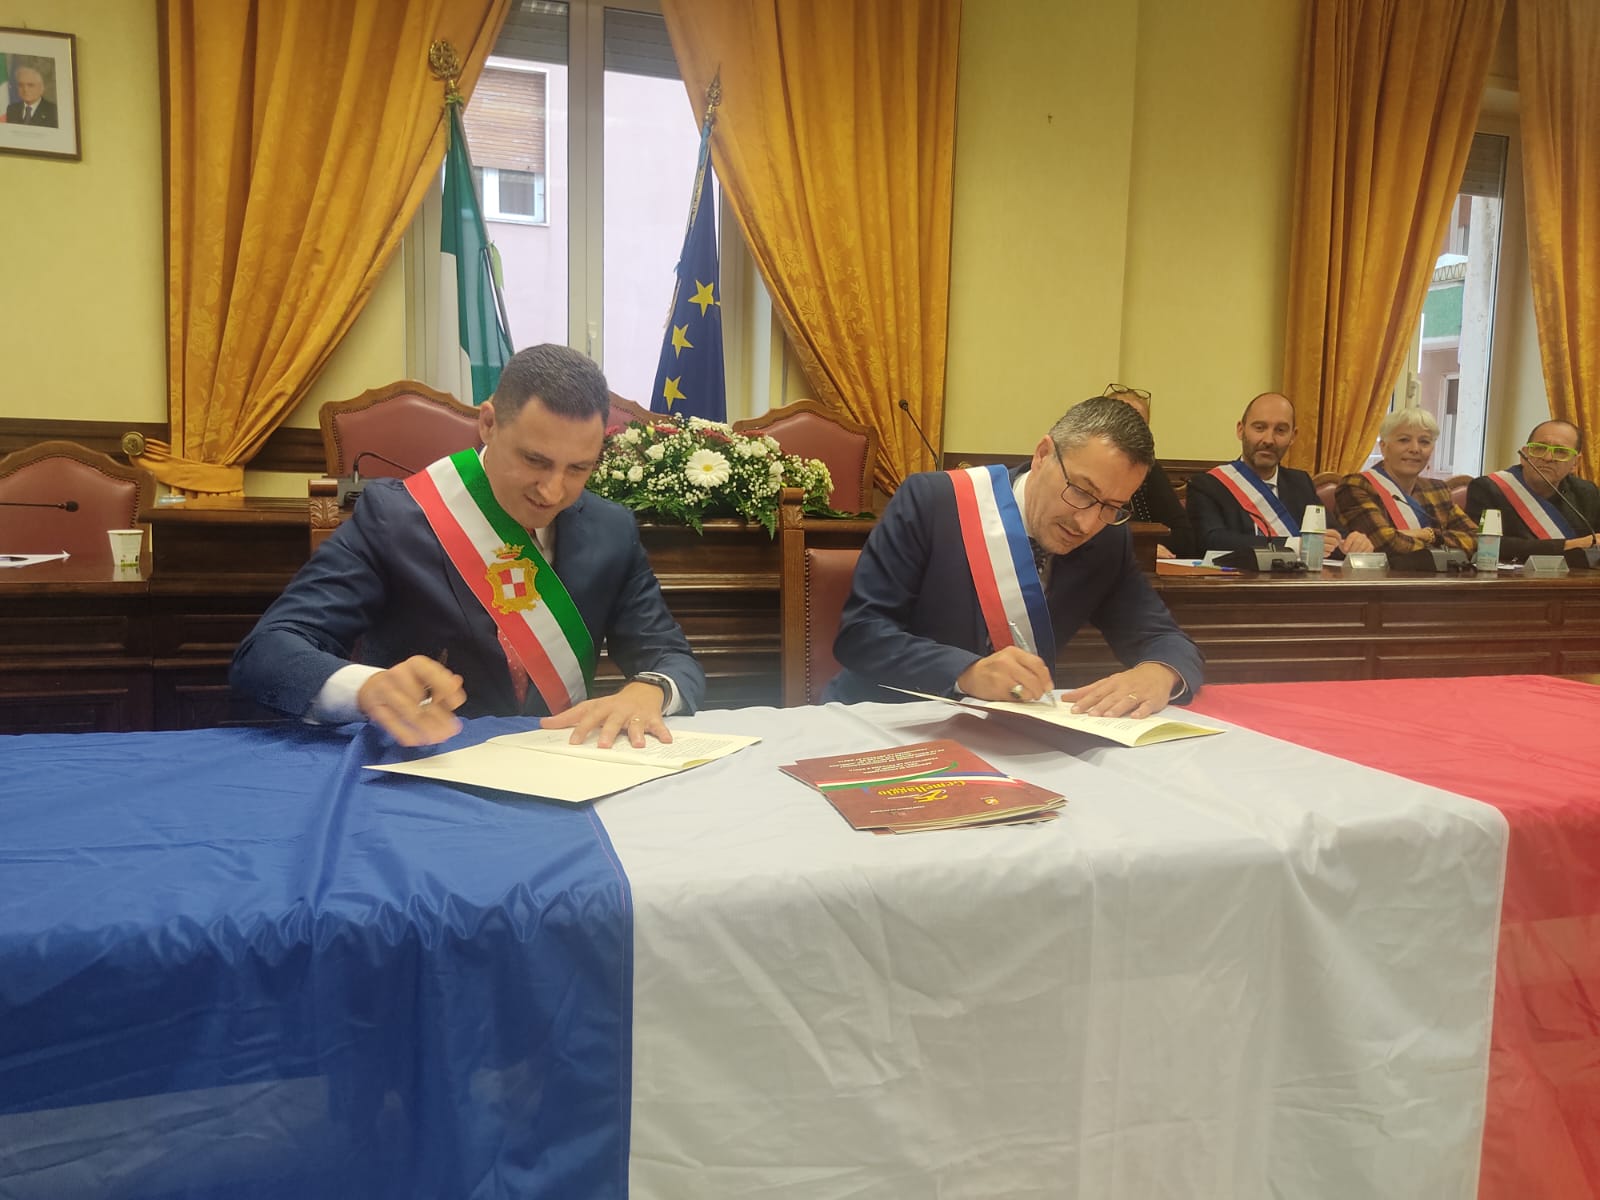 Gaeta e Frontignan La Peyrade, rinnovato ufficialmente il patto di amicizia in occasione del 25° anniversario del gemellaggio